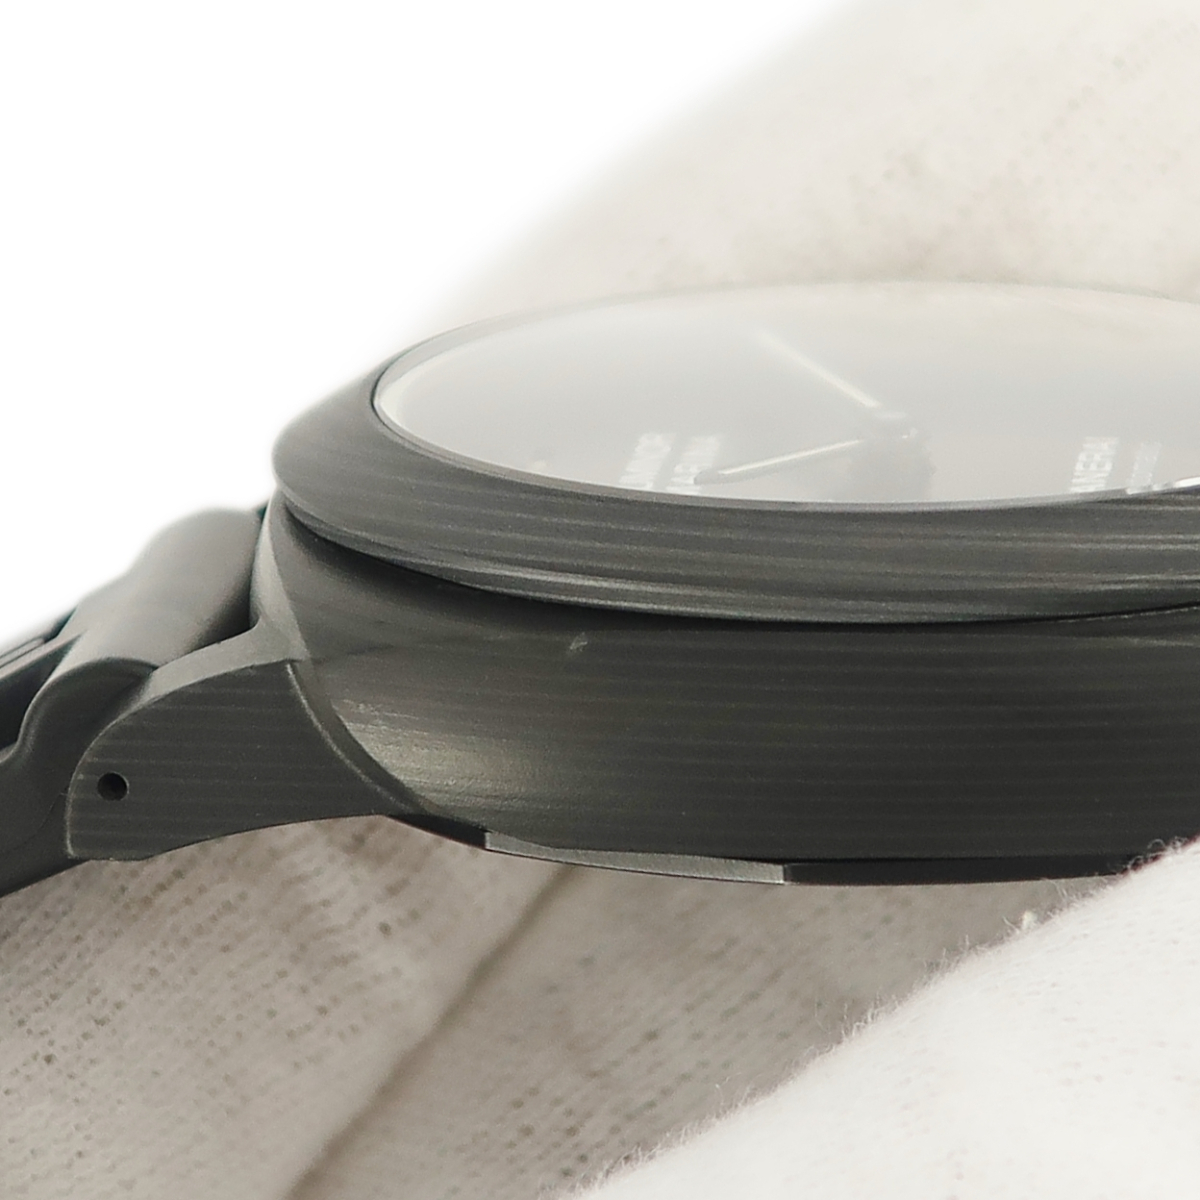 【3年保証】 パネライ ルミノール マリーナ カーボテック 70周年 限定 PAM01118 W番 黒 2020年 自動巻き メンズ 腕時計_画像4